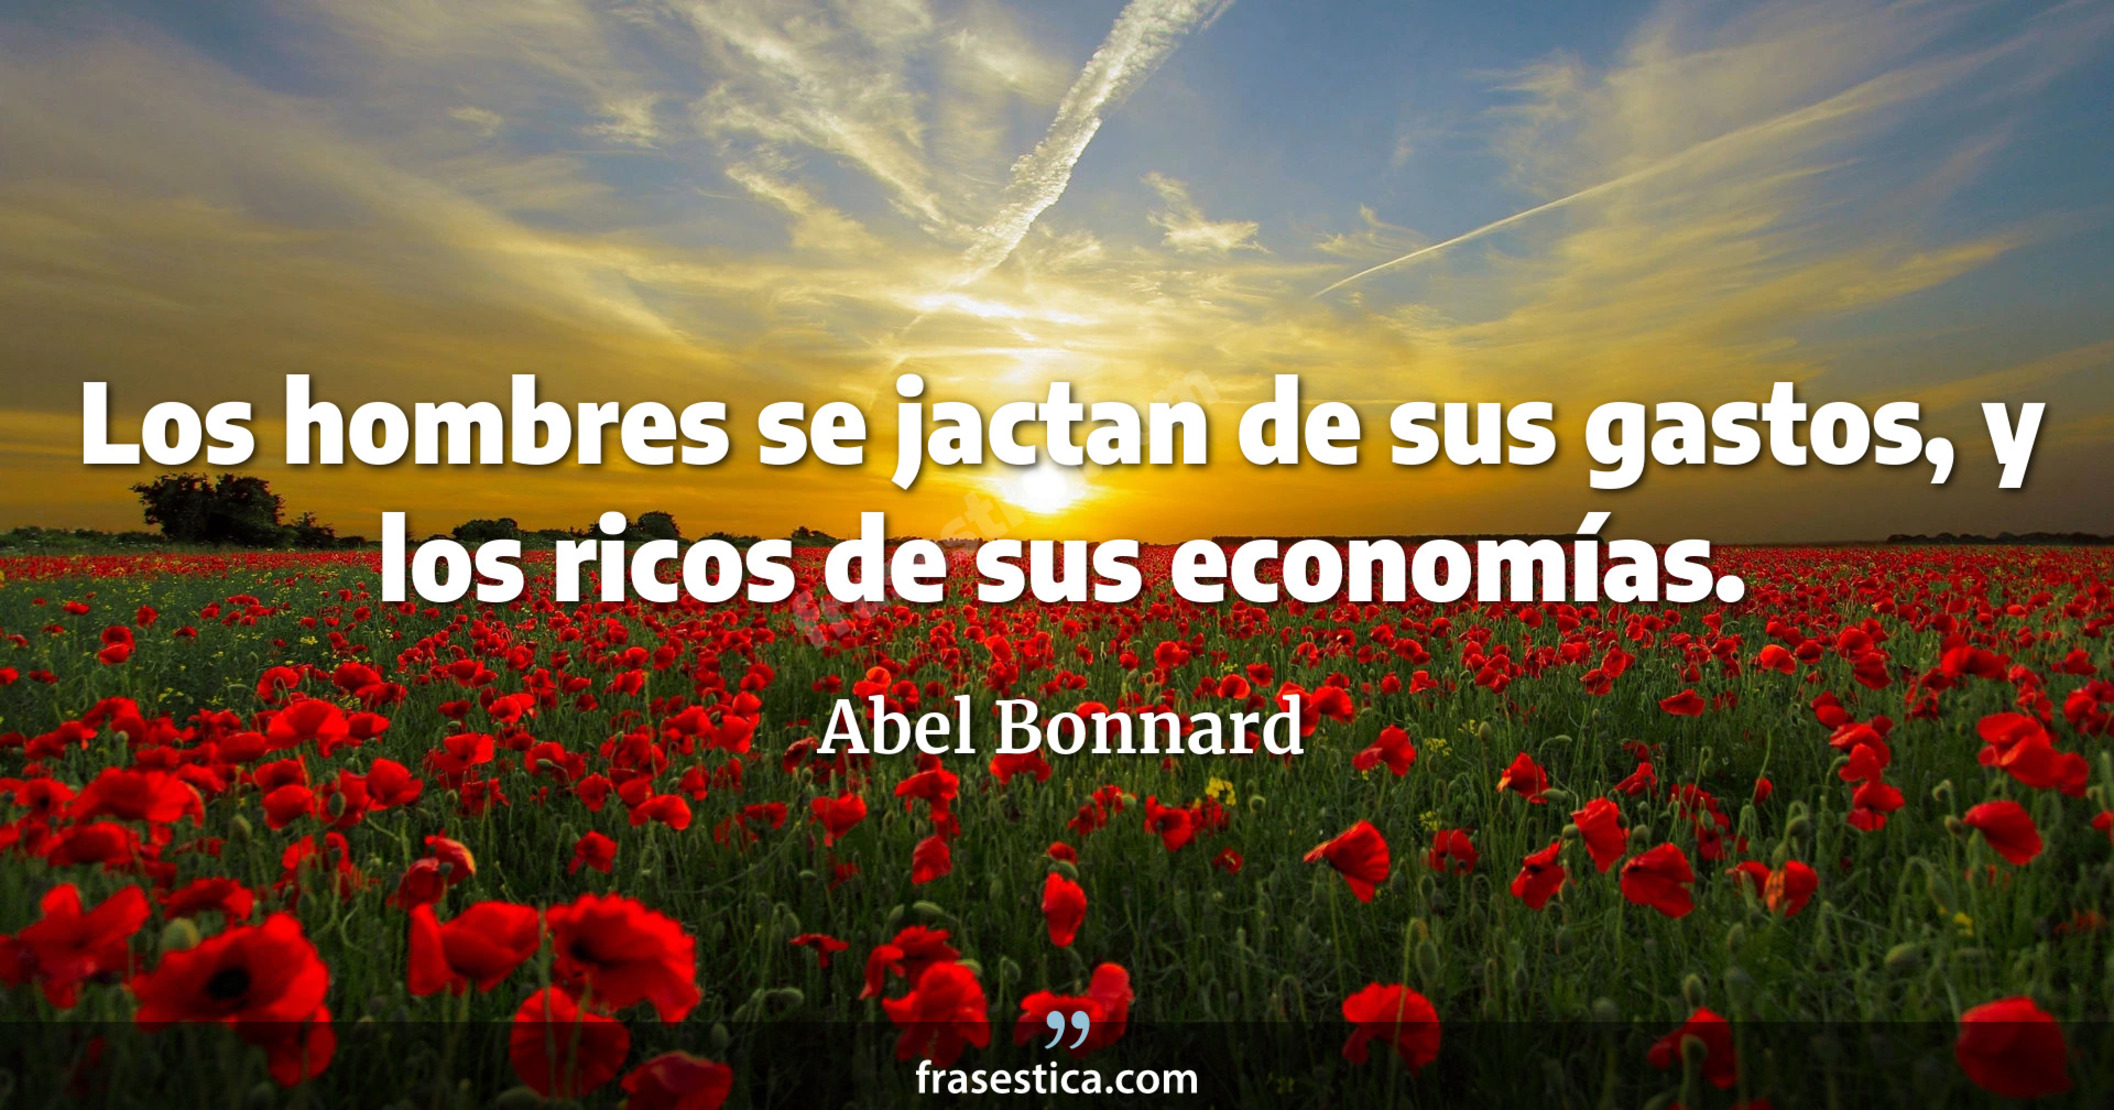 Los hombres se jactan de sus gastos, y los ricos de sus economías. - Abel Bonnard